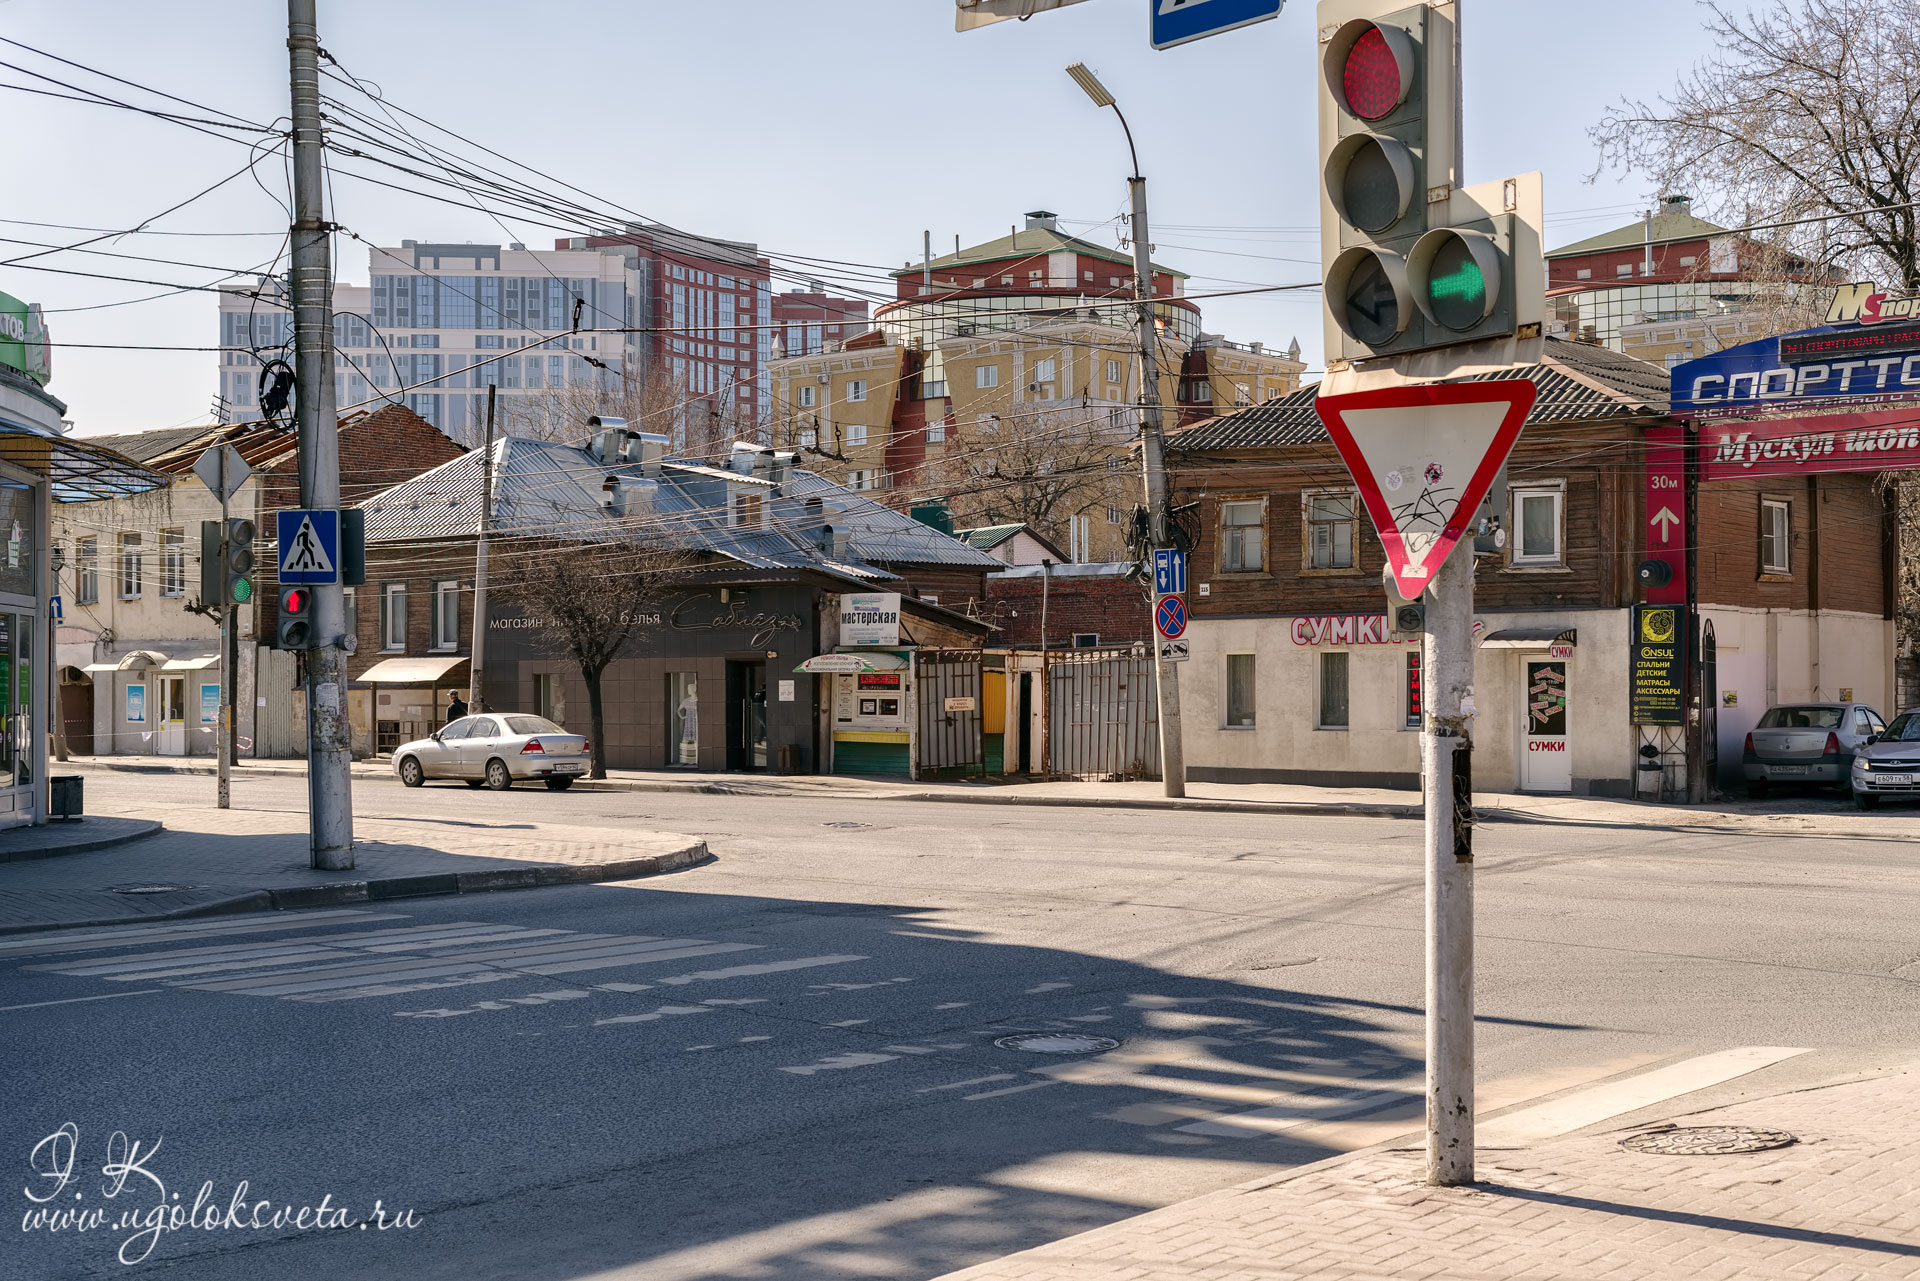 Пересечение улиц Краснорядской и Маяковского. Старое и новое